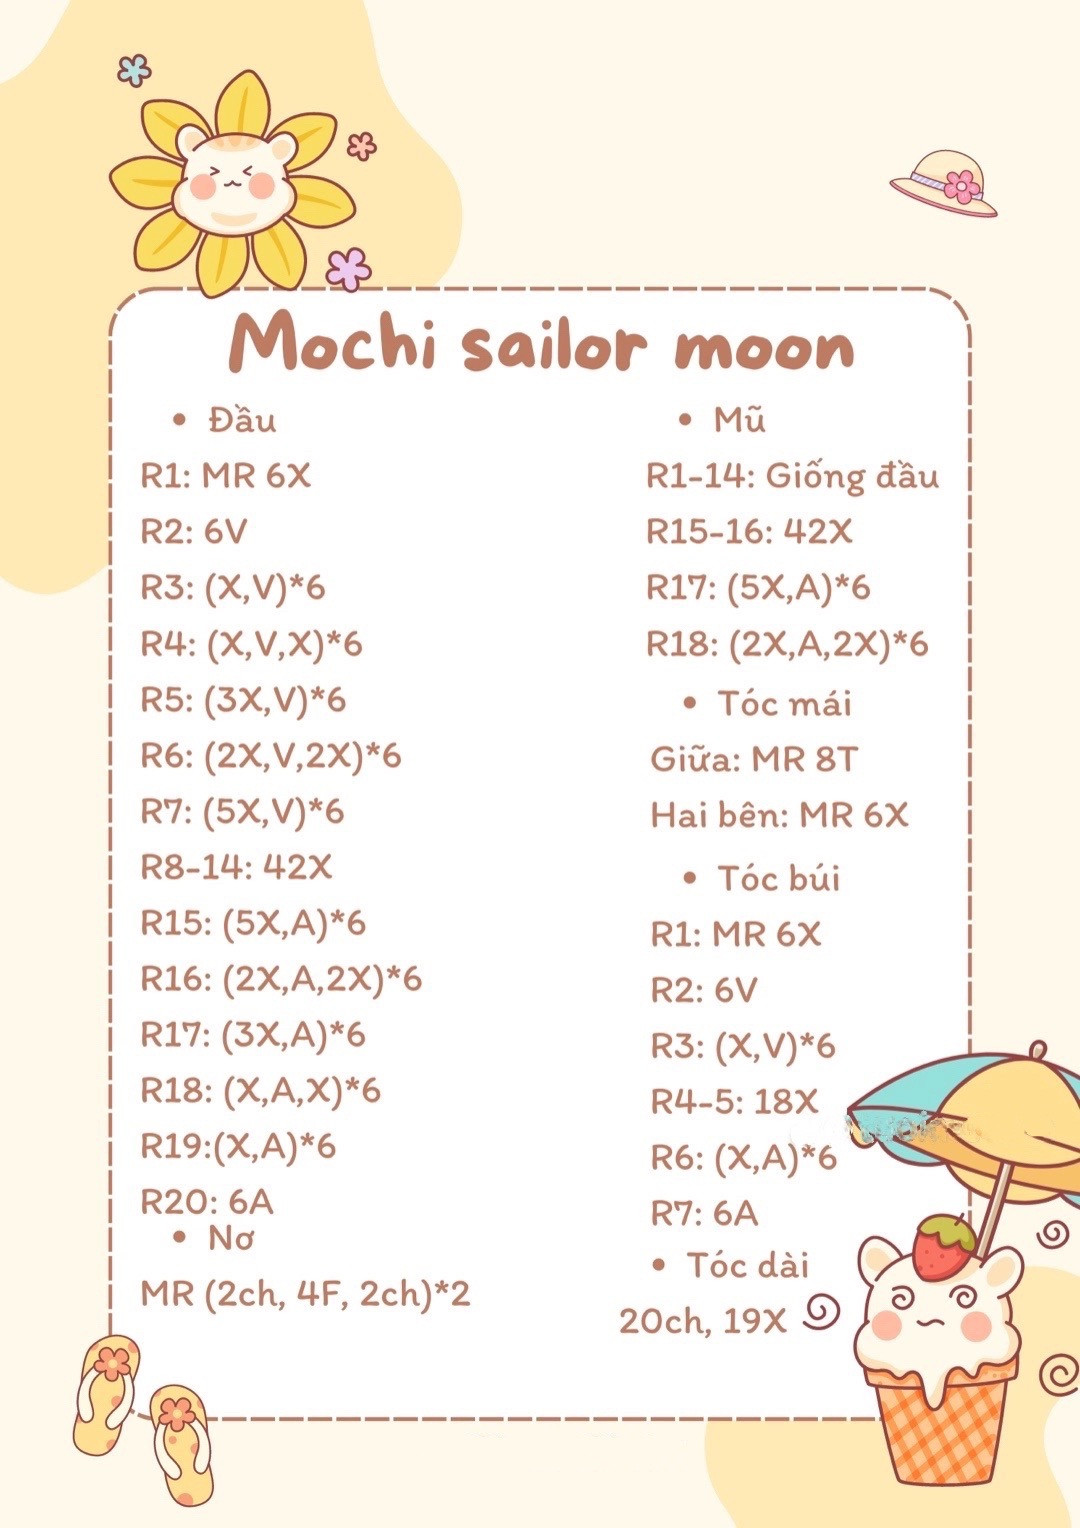 Hướng dẫn móc mochi sailor moon